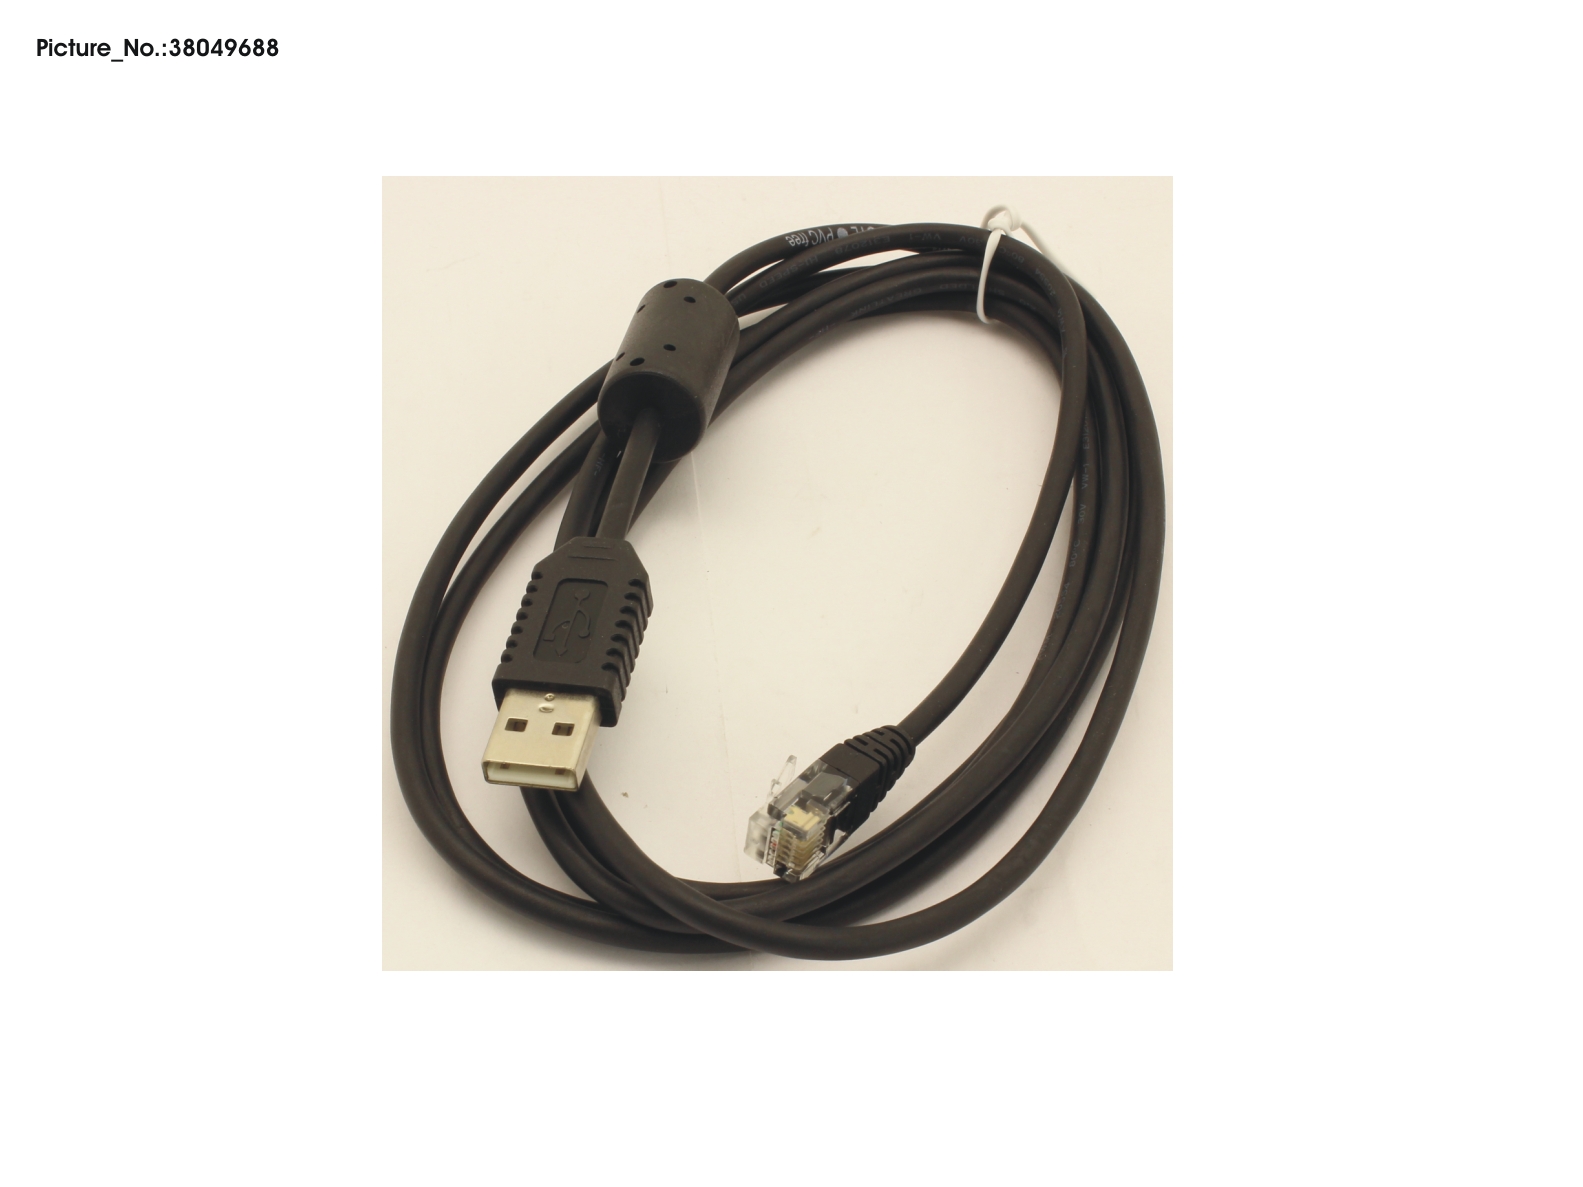 FUJITSU CABLE USB NON PVC